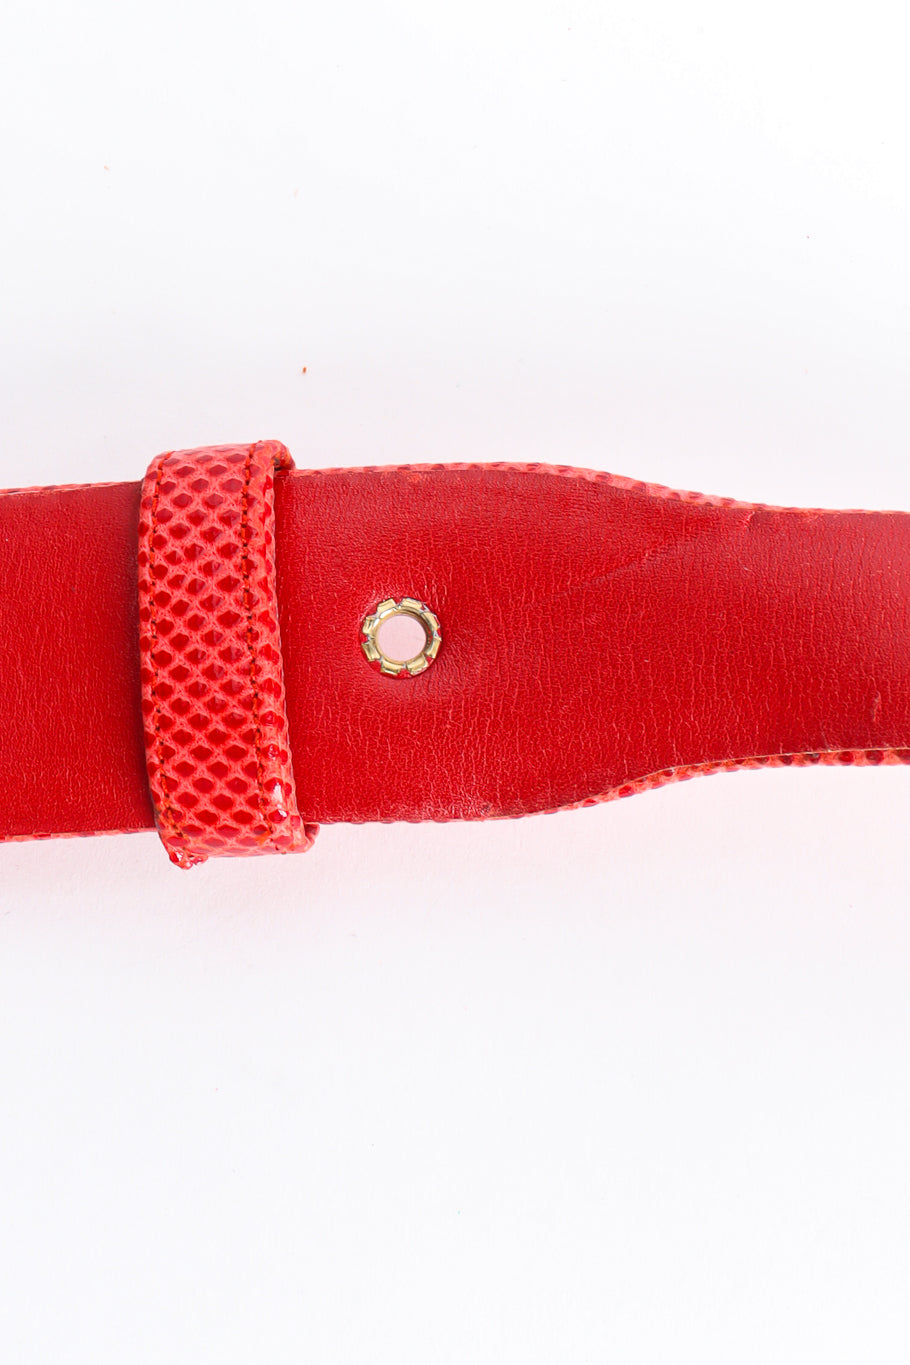 zig zag buckle slide belt by Judith Leiber grommet @recessla